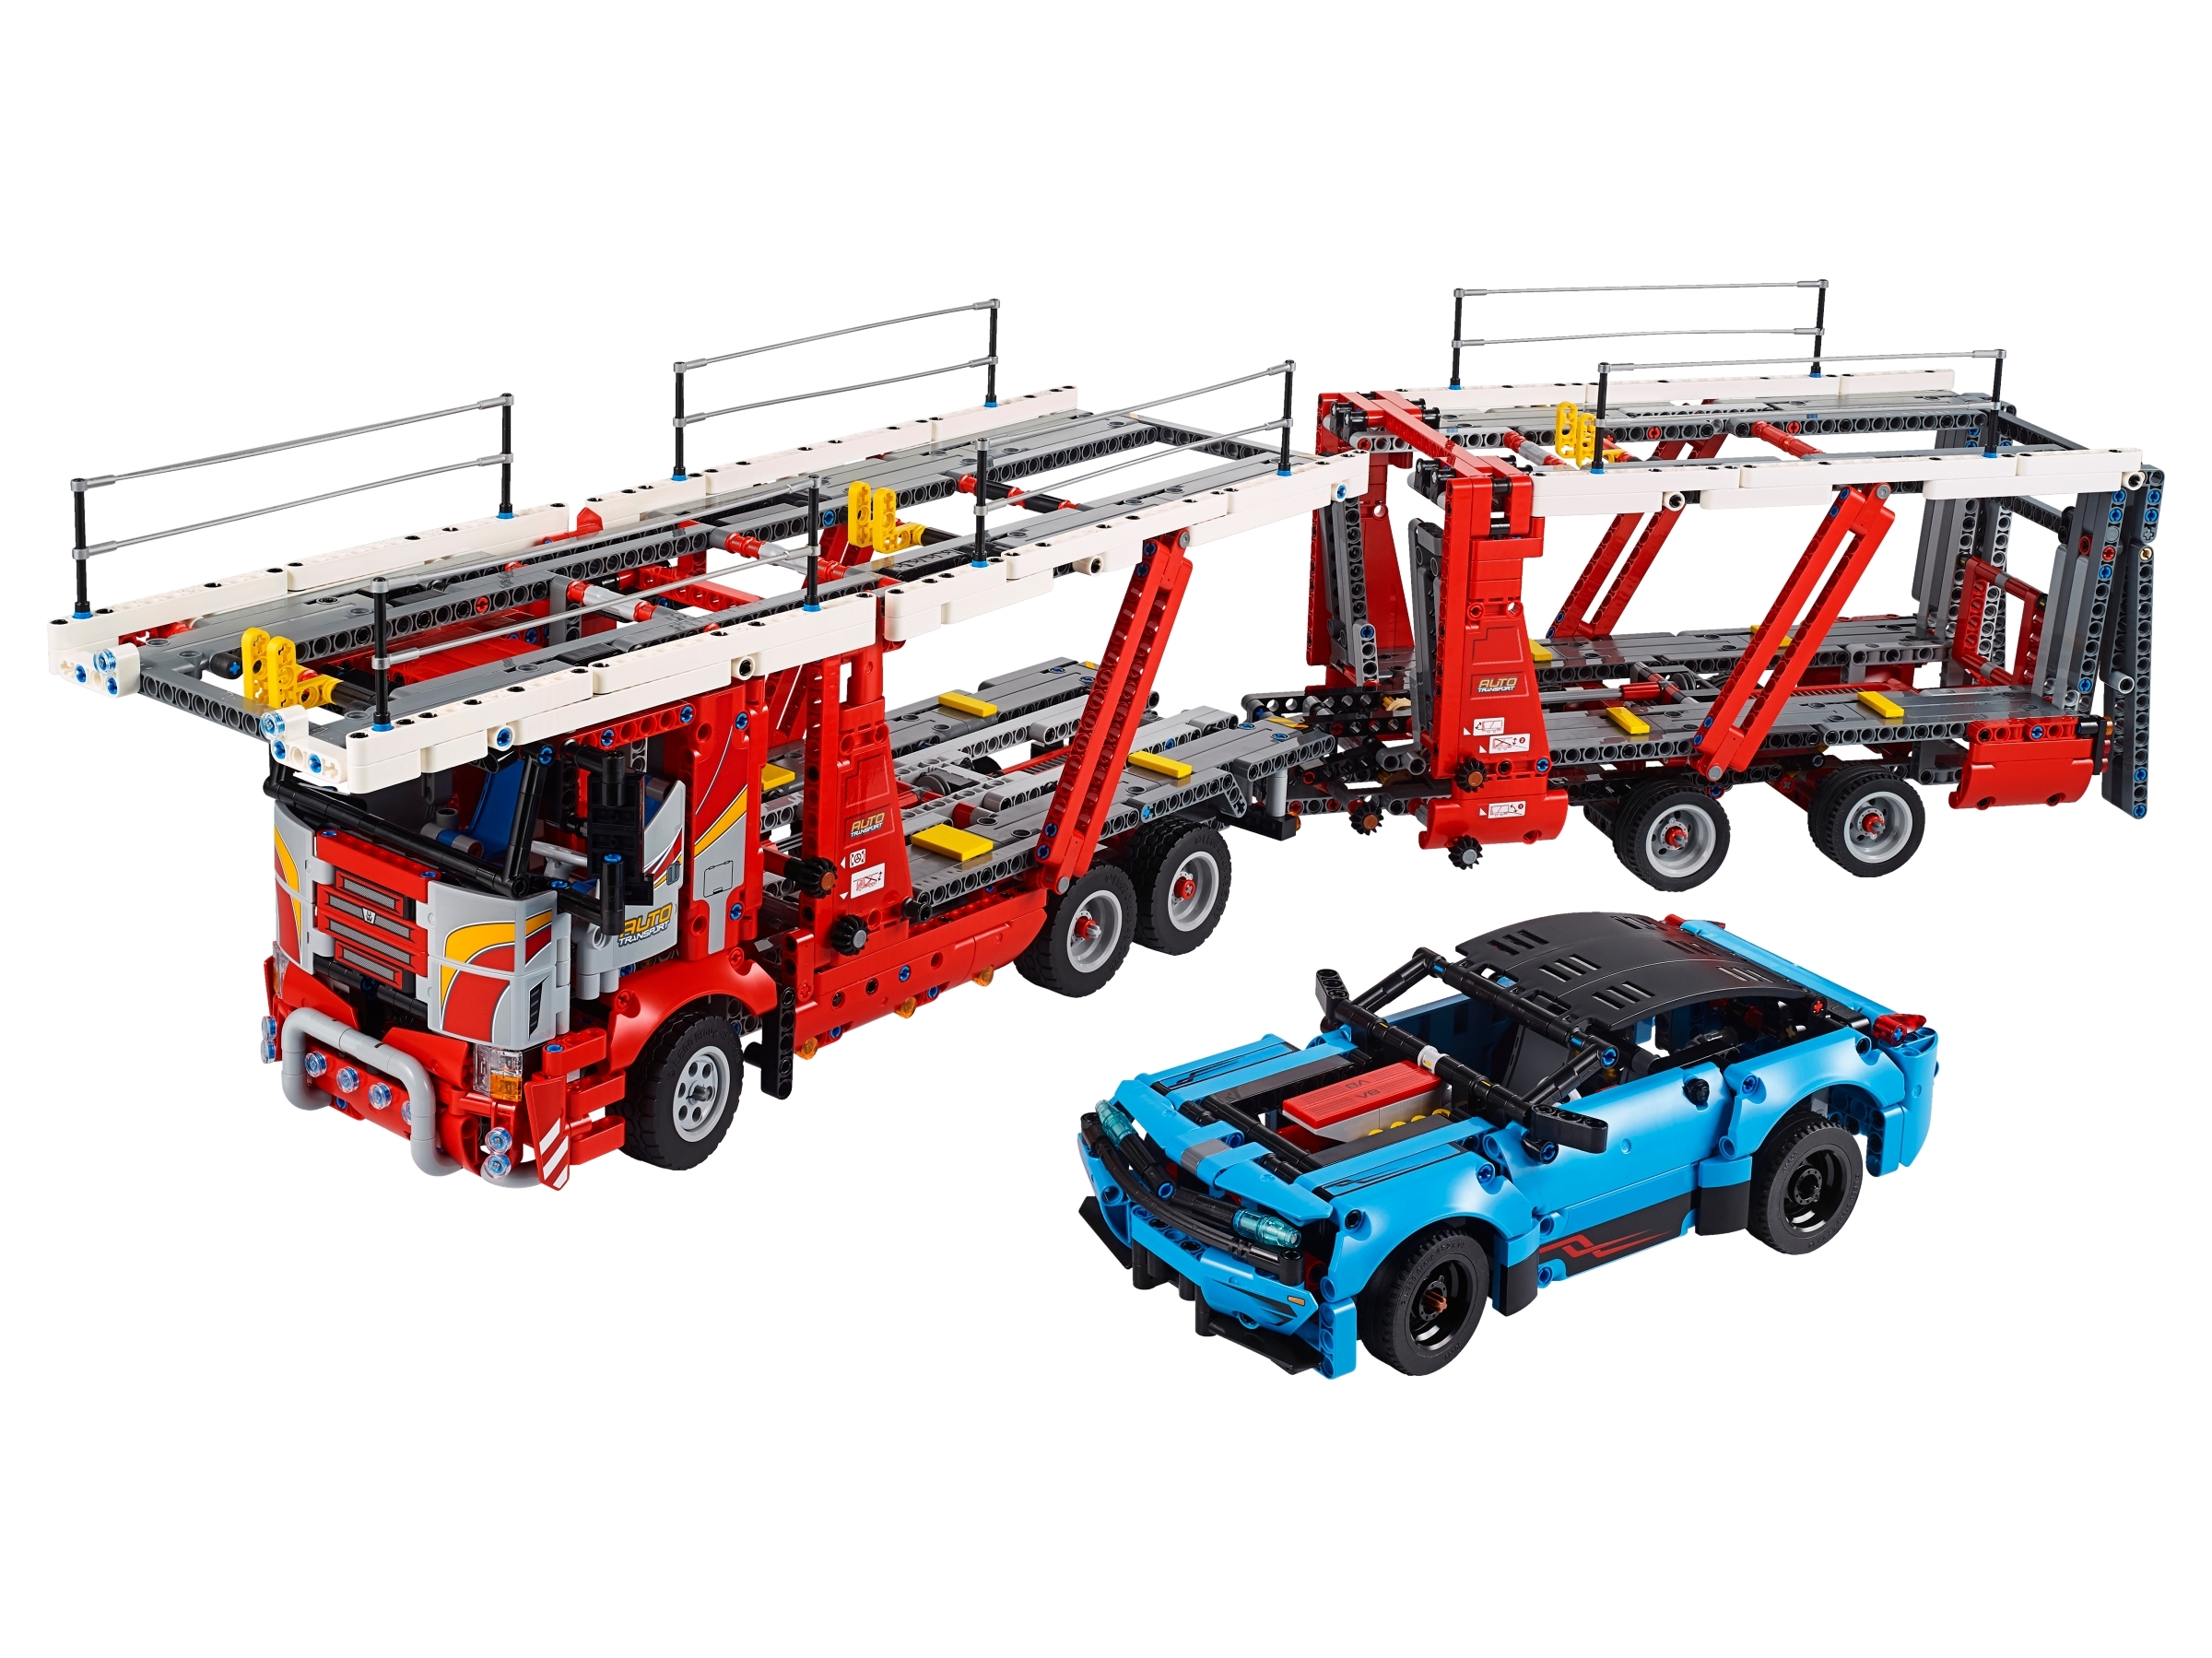 42098 - Le transporteur de voitures - Lego